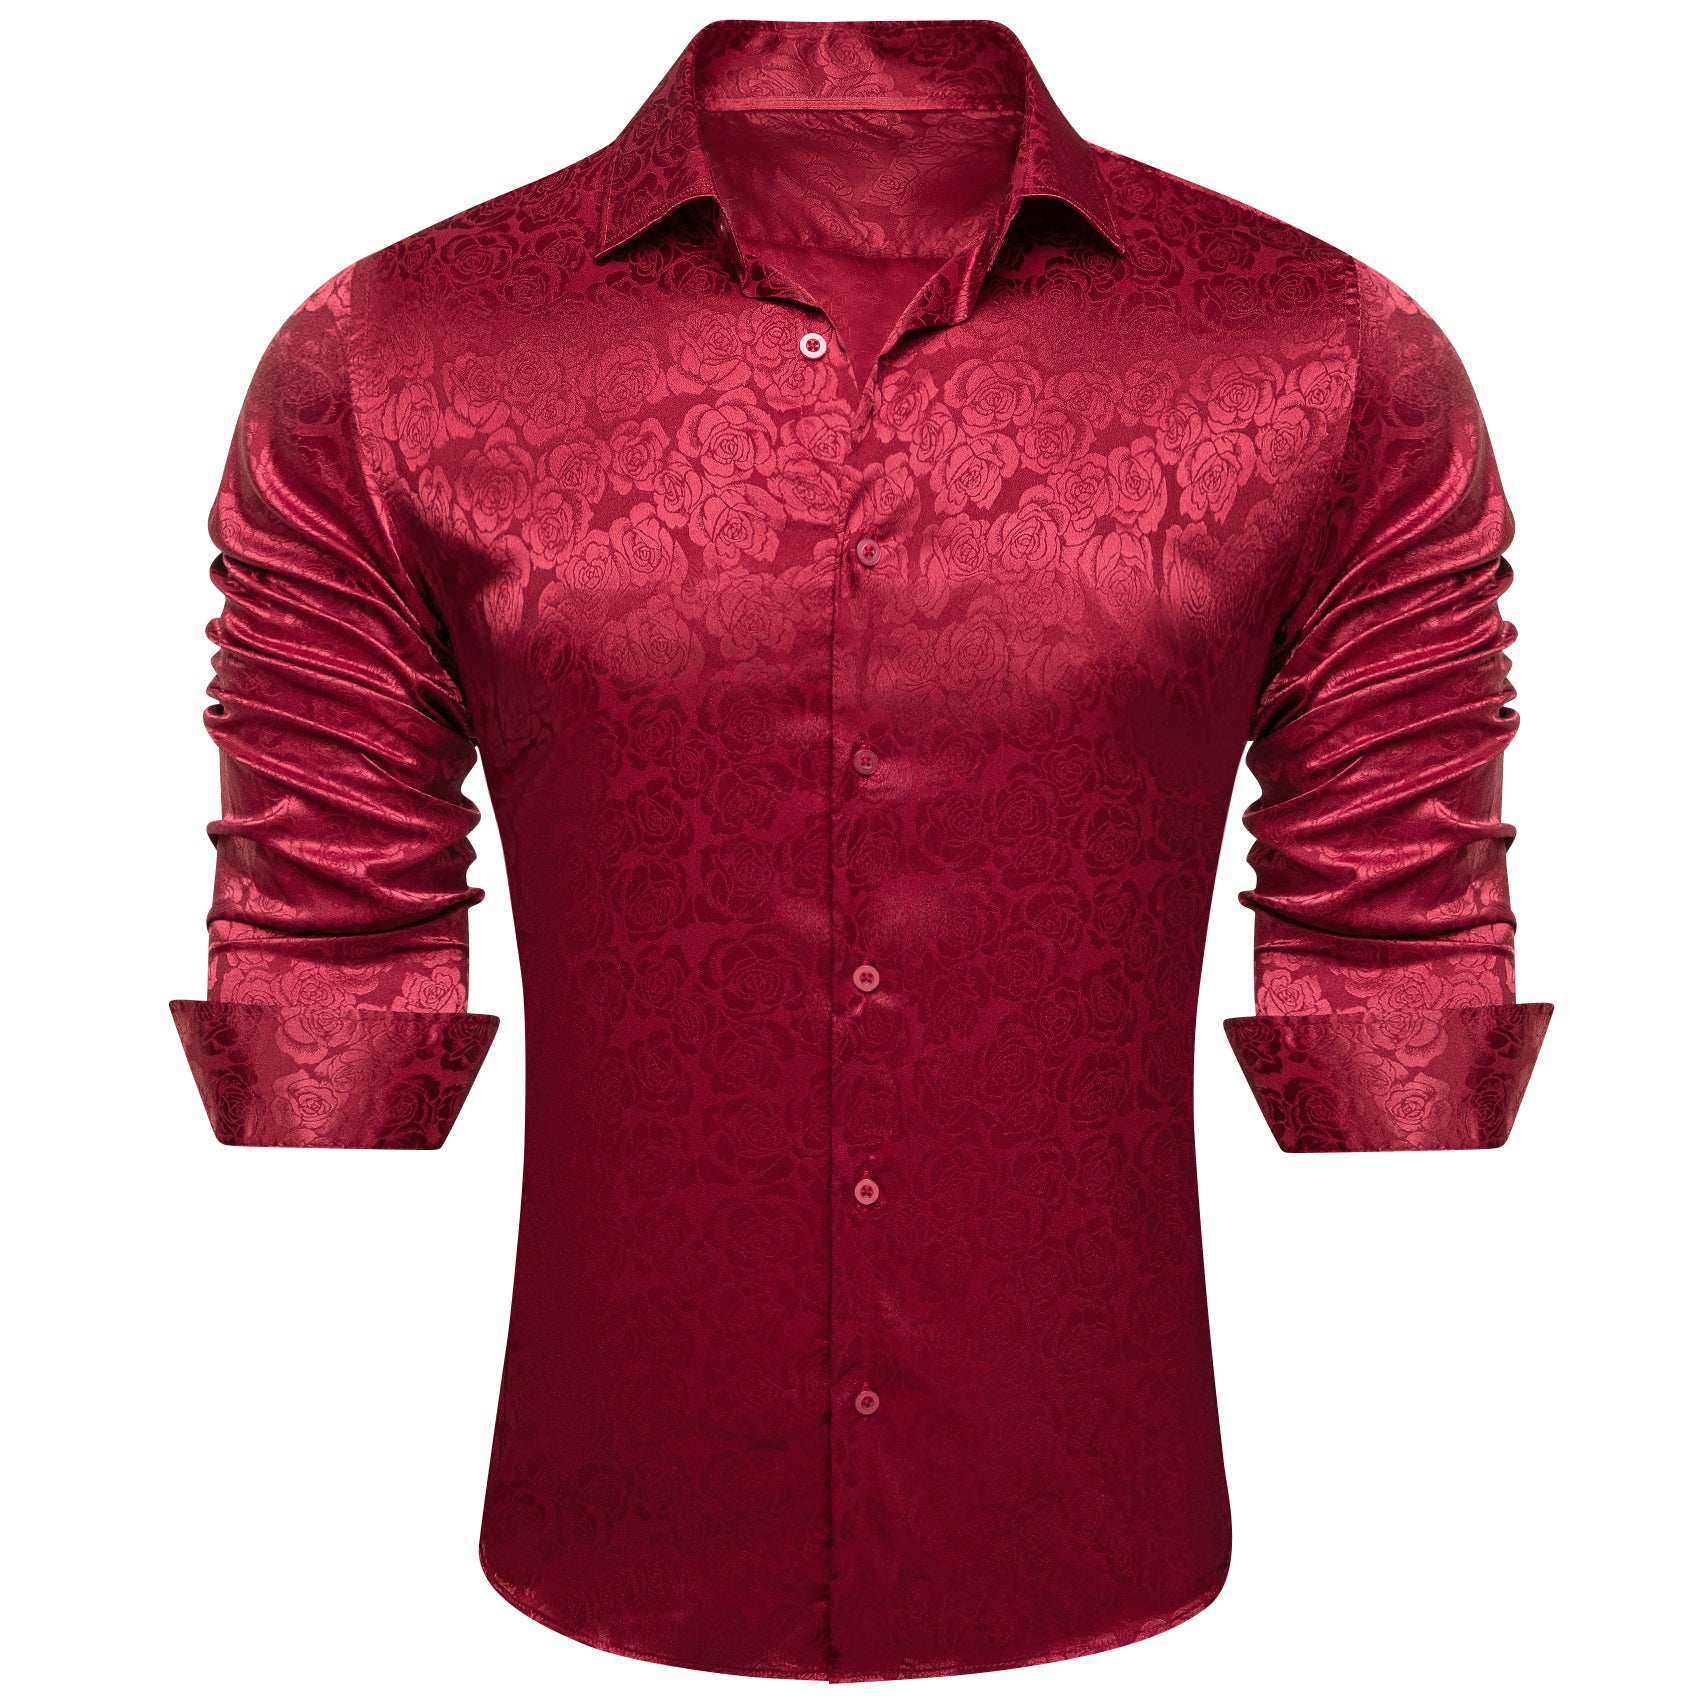 Barry.wang Men's Long Sleeve Shirt Dark Red Print Floral Silk Men's Shirt